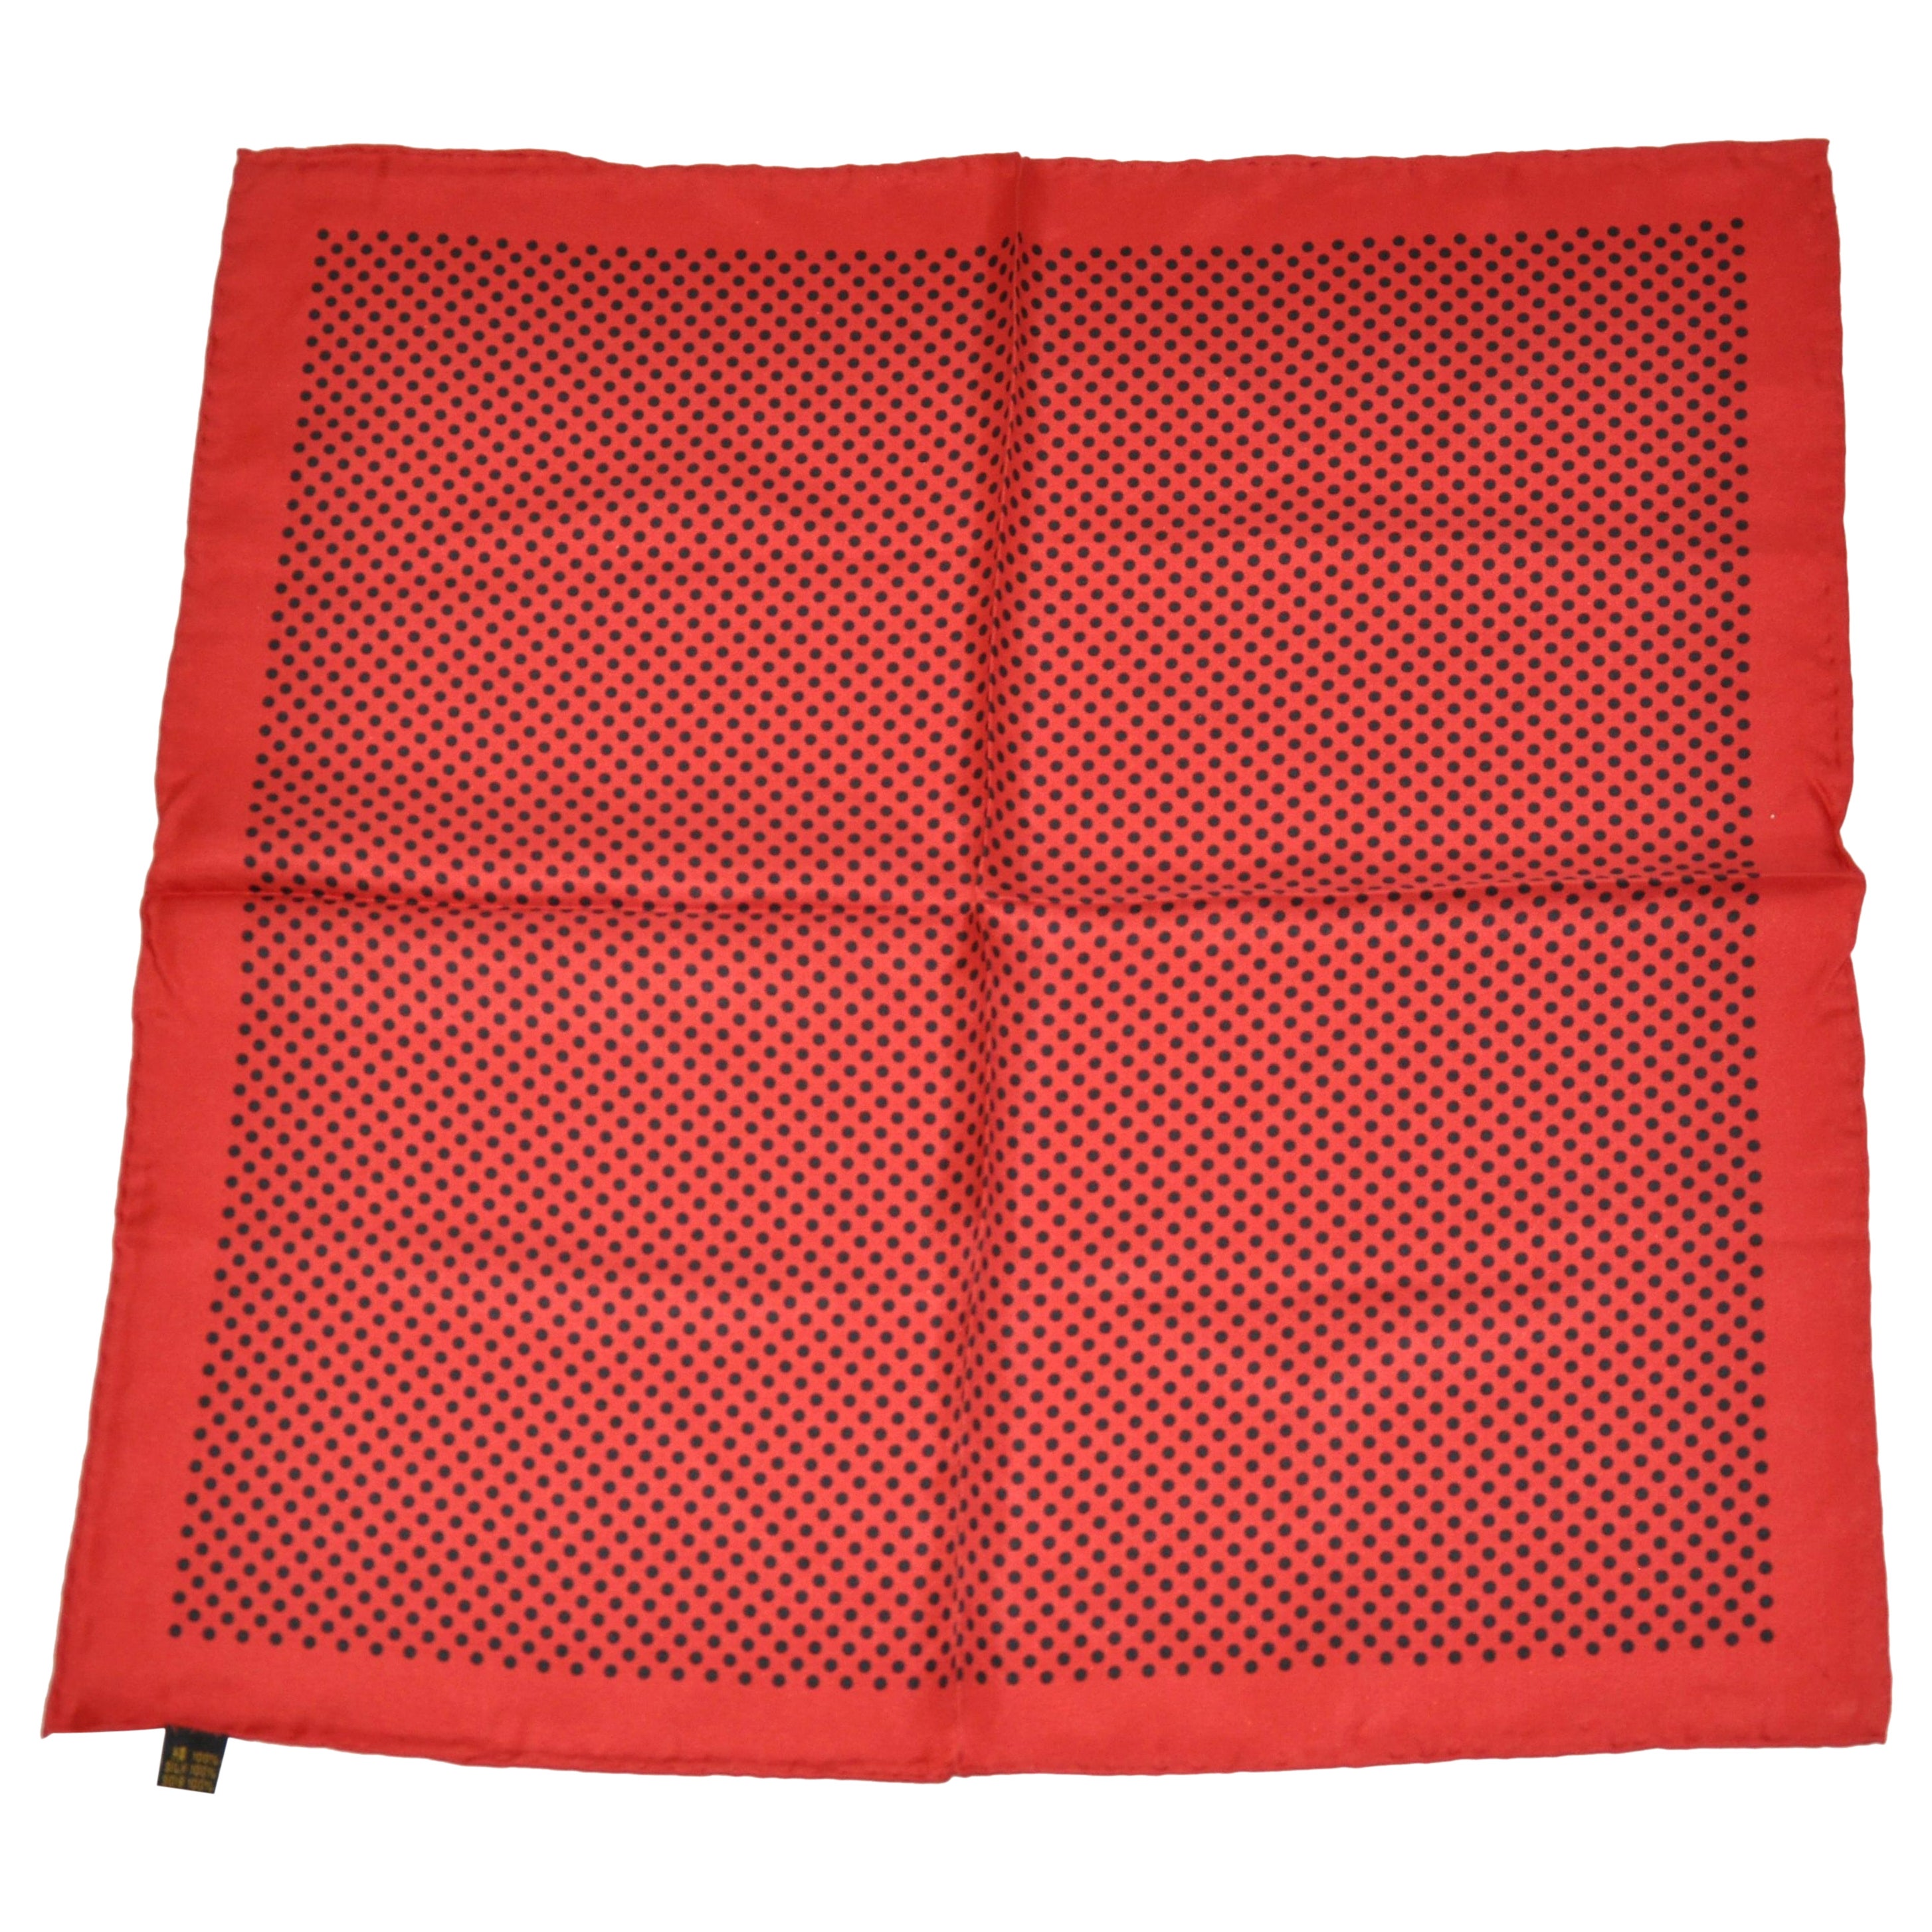 Handtaschentuch aus Seide mit roten und schwarzen Tupfen, Signatur